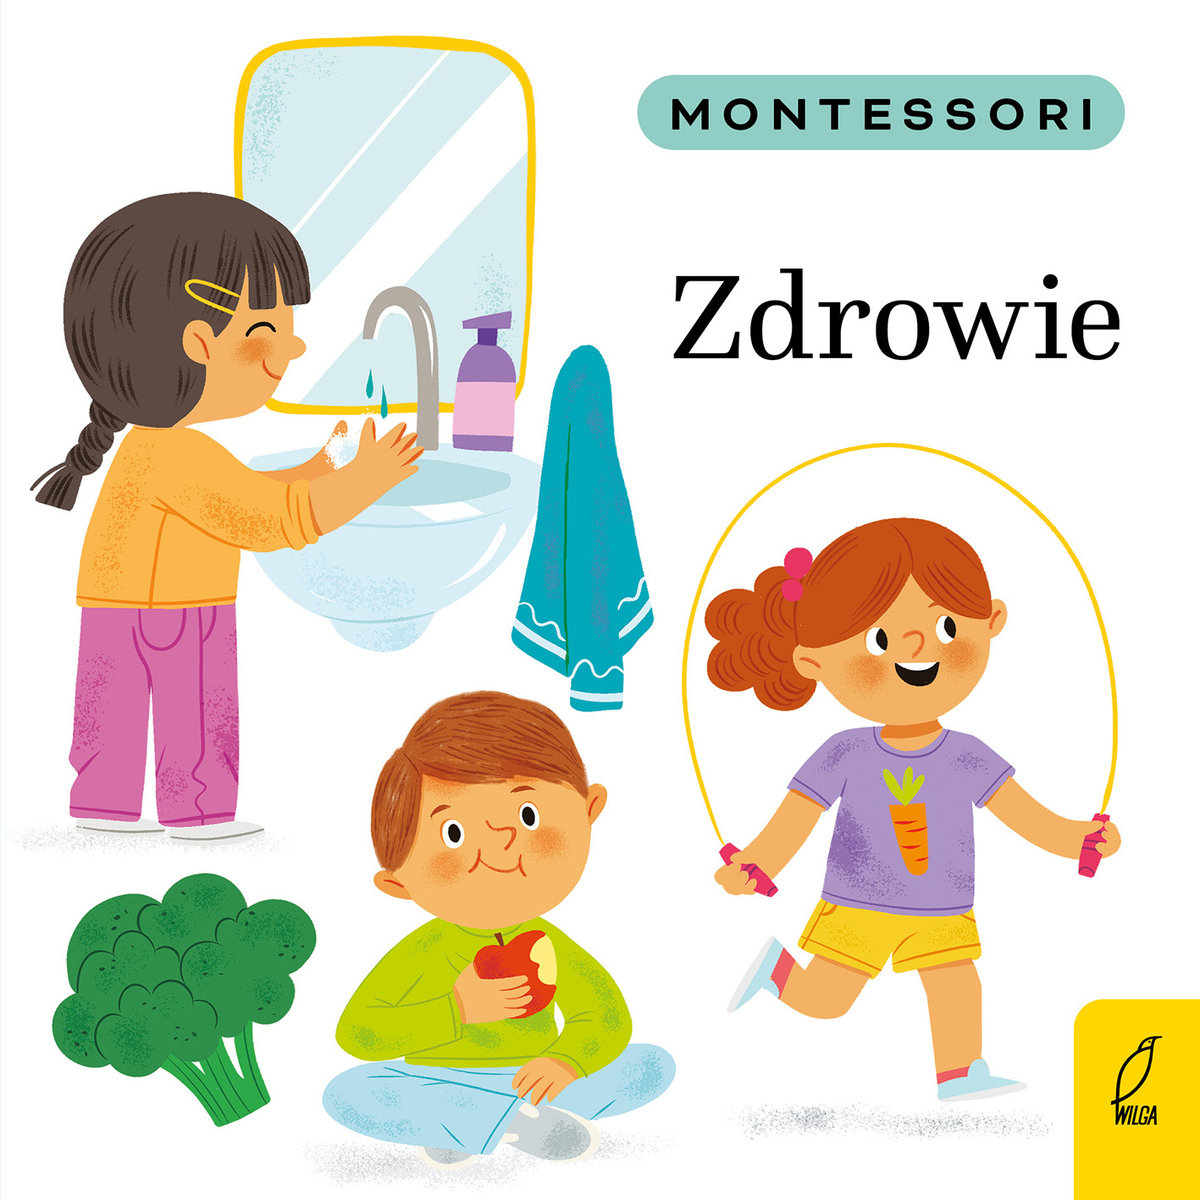 Montessori Zdrowie by . 